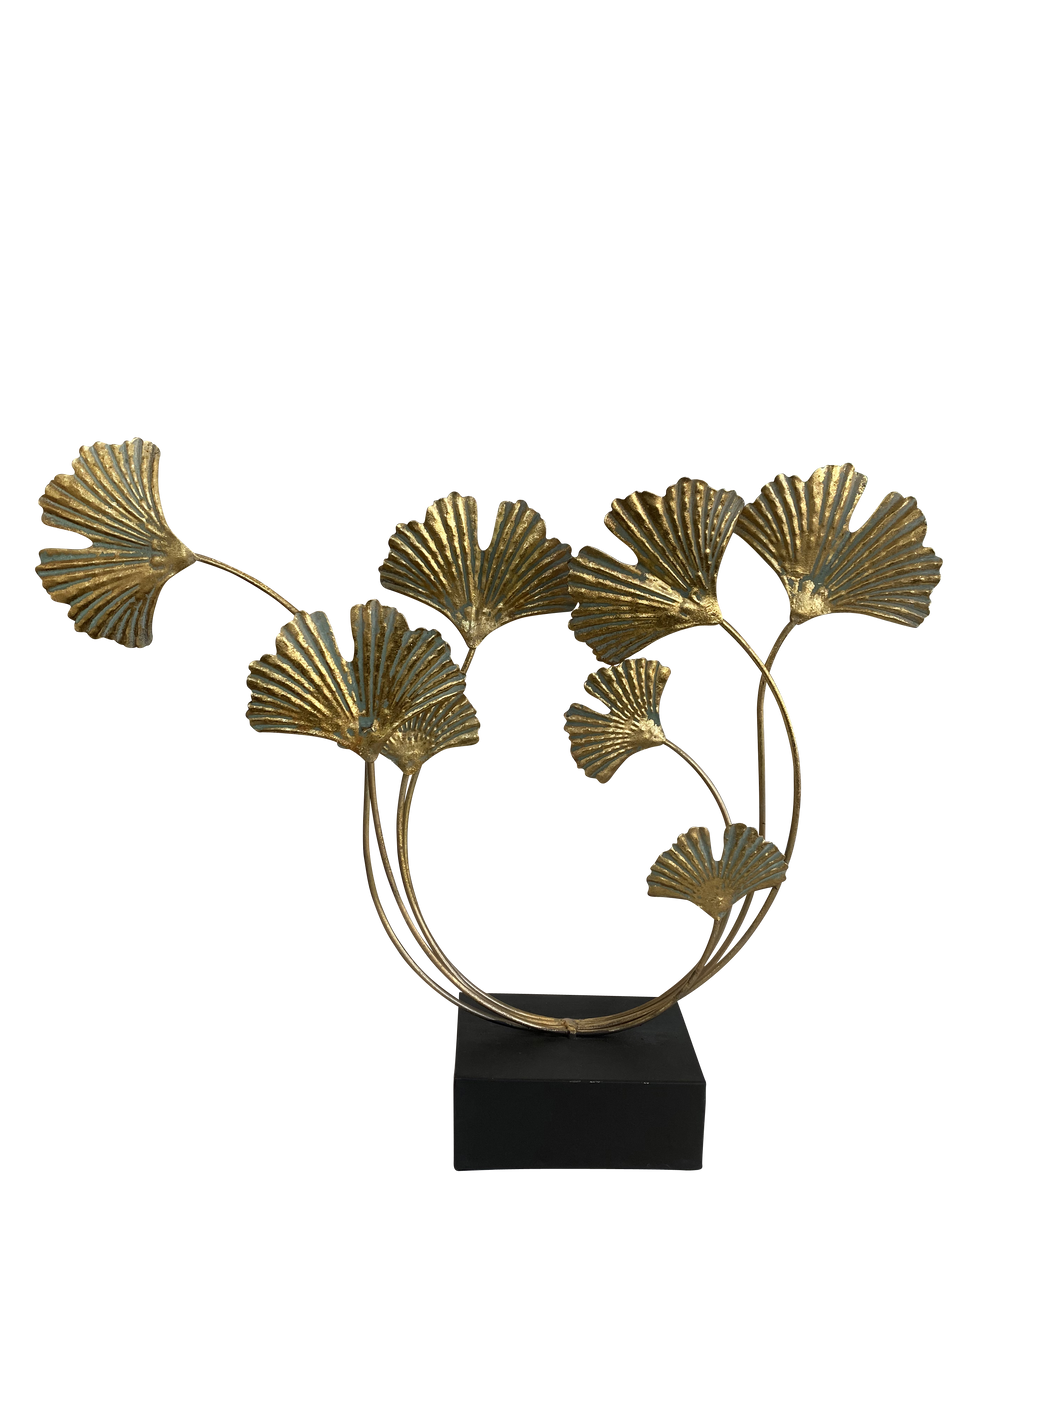 Gold Leaf Metal Sculpture